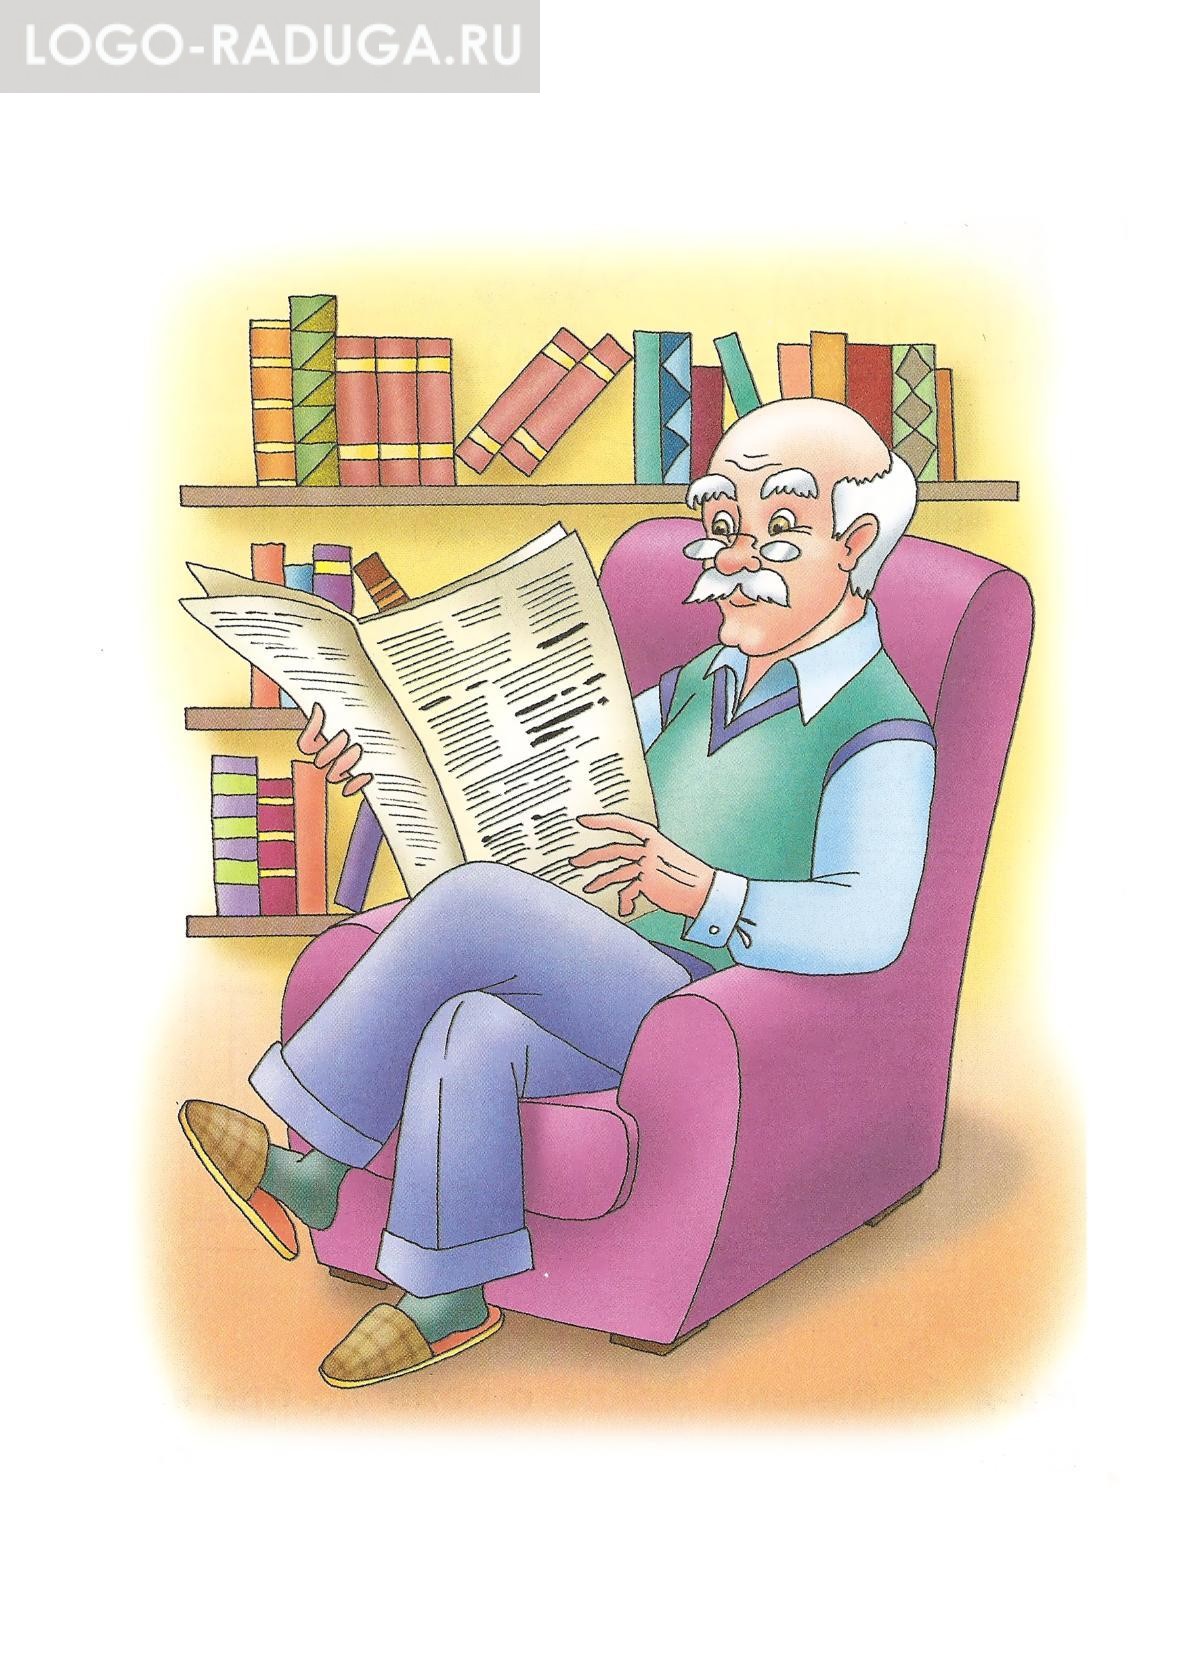 Дедушка читает газету